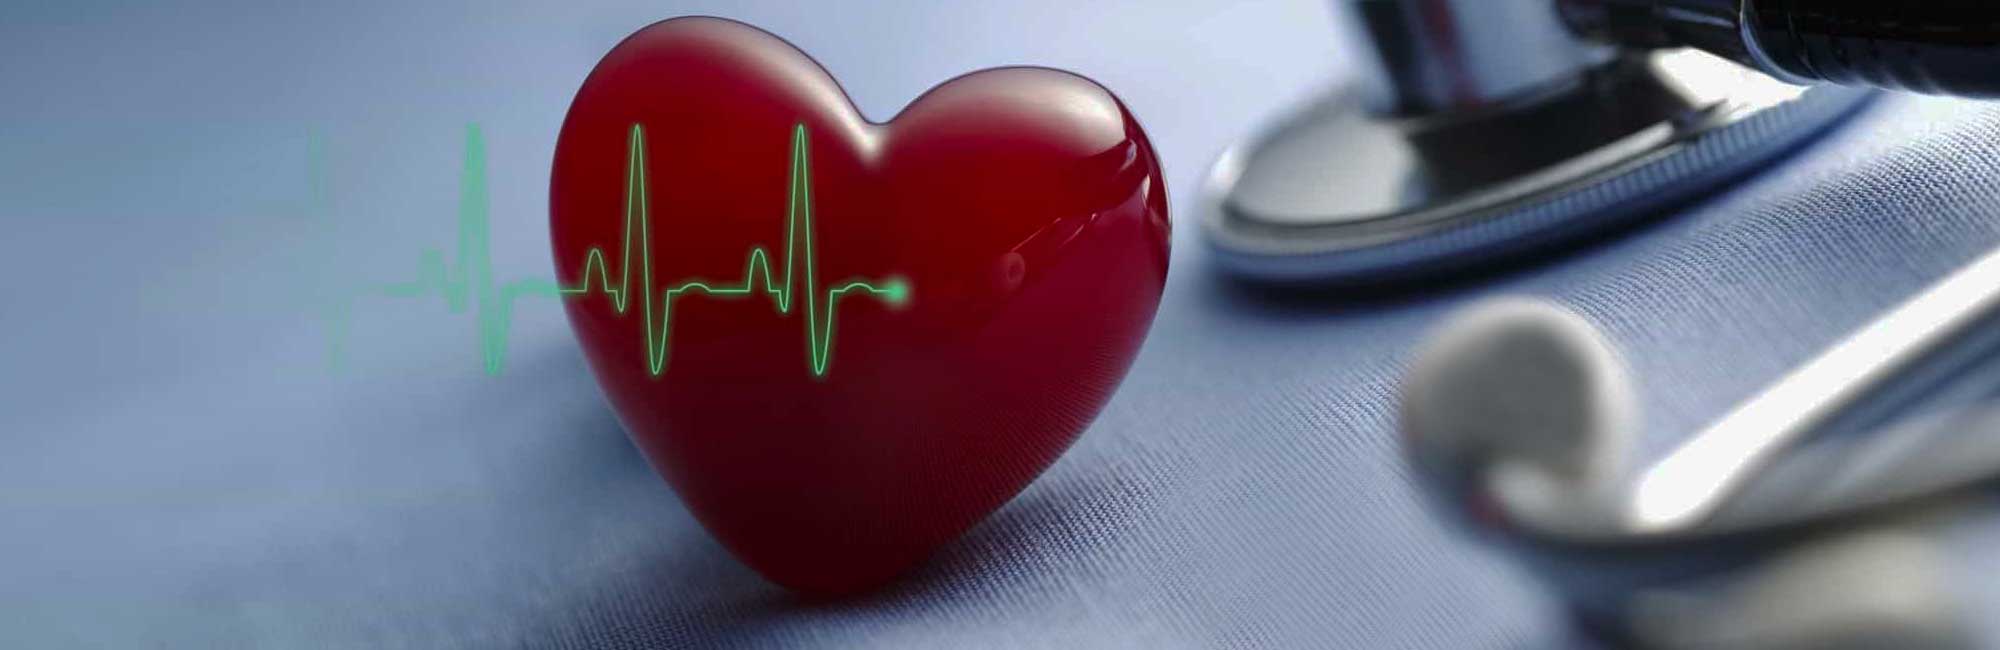 cardiocenter-napoli-check-up-cuore-completo